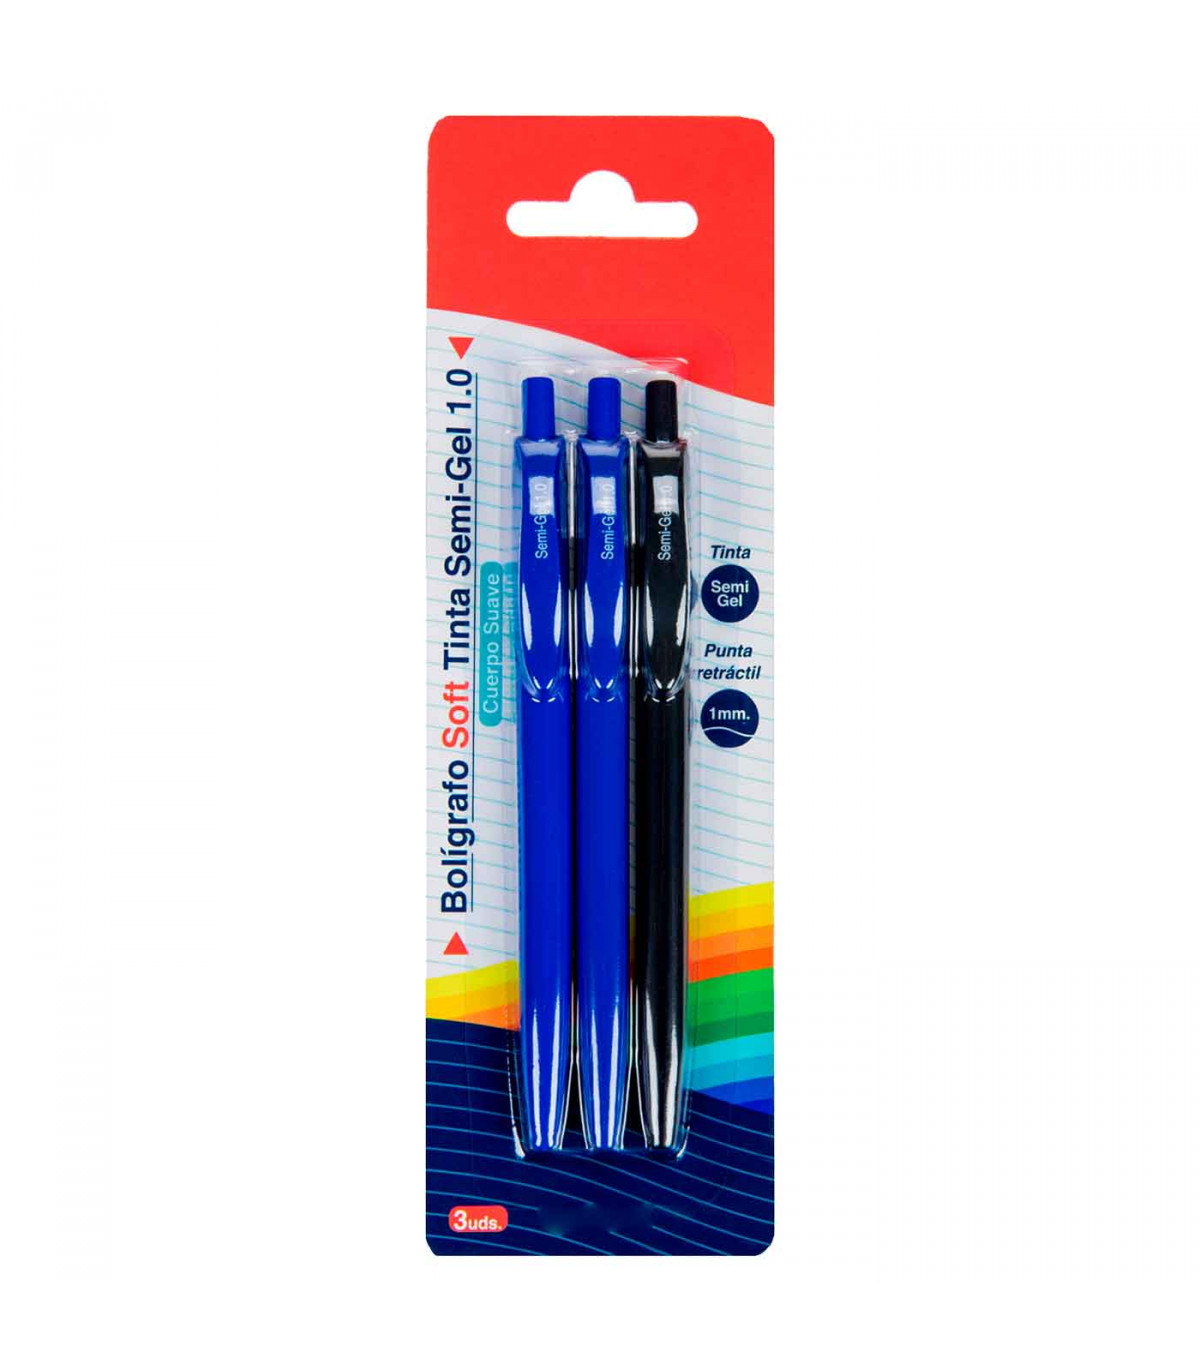 Tradineur - Set de 3 bolígrafos retráctiles - Fabricado en plástico PVC -  Tinta semi gel - Punta de 1mm - Color azul y negro.